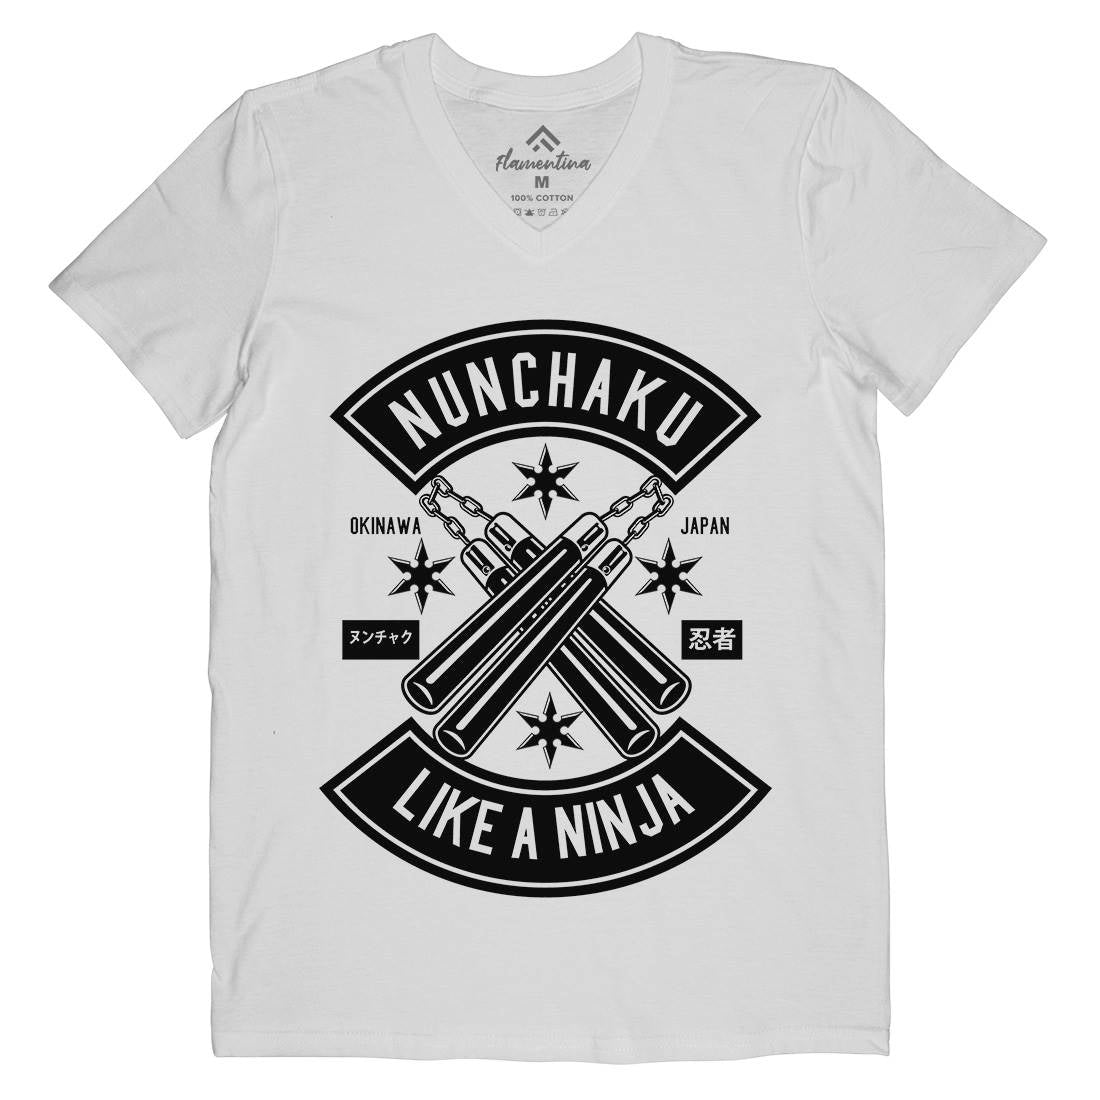 Nunchaku Mens V-Neck T-Shirt Sport B589